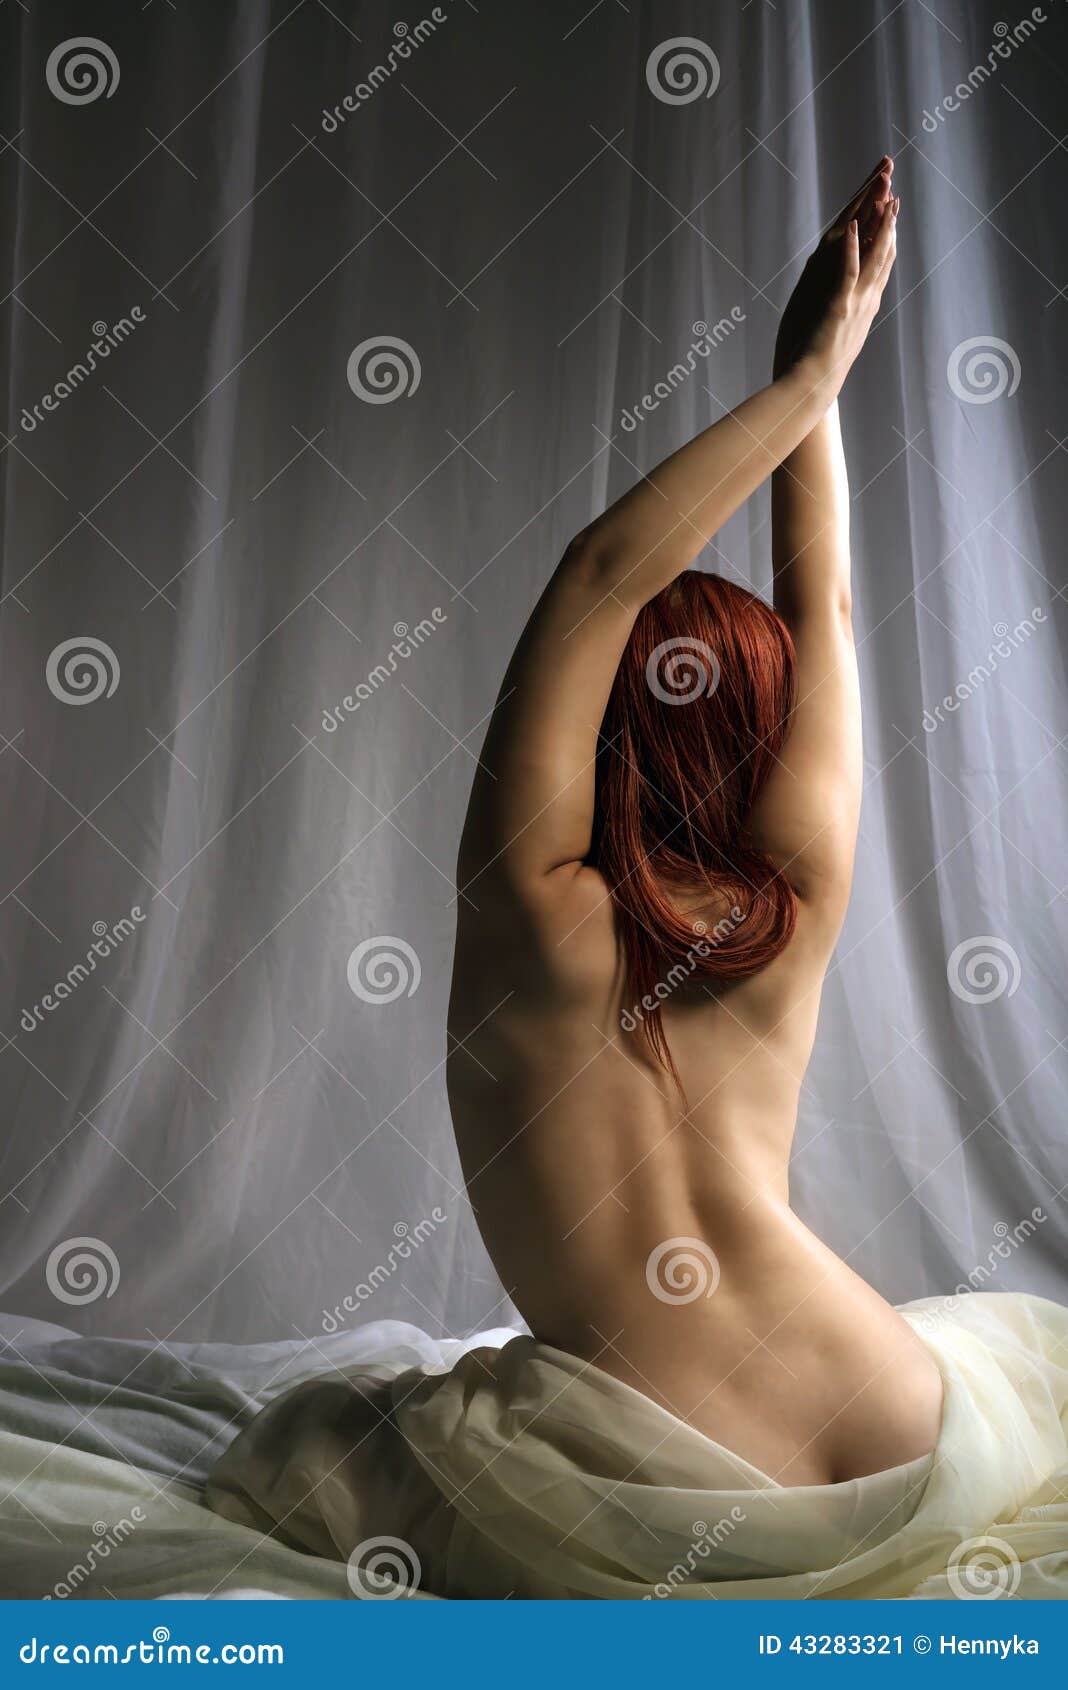 Naked Women On A Bed porn eskorte